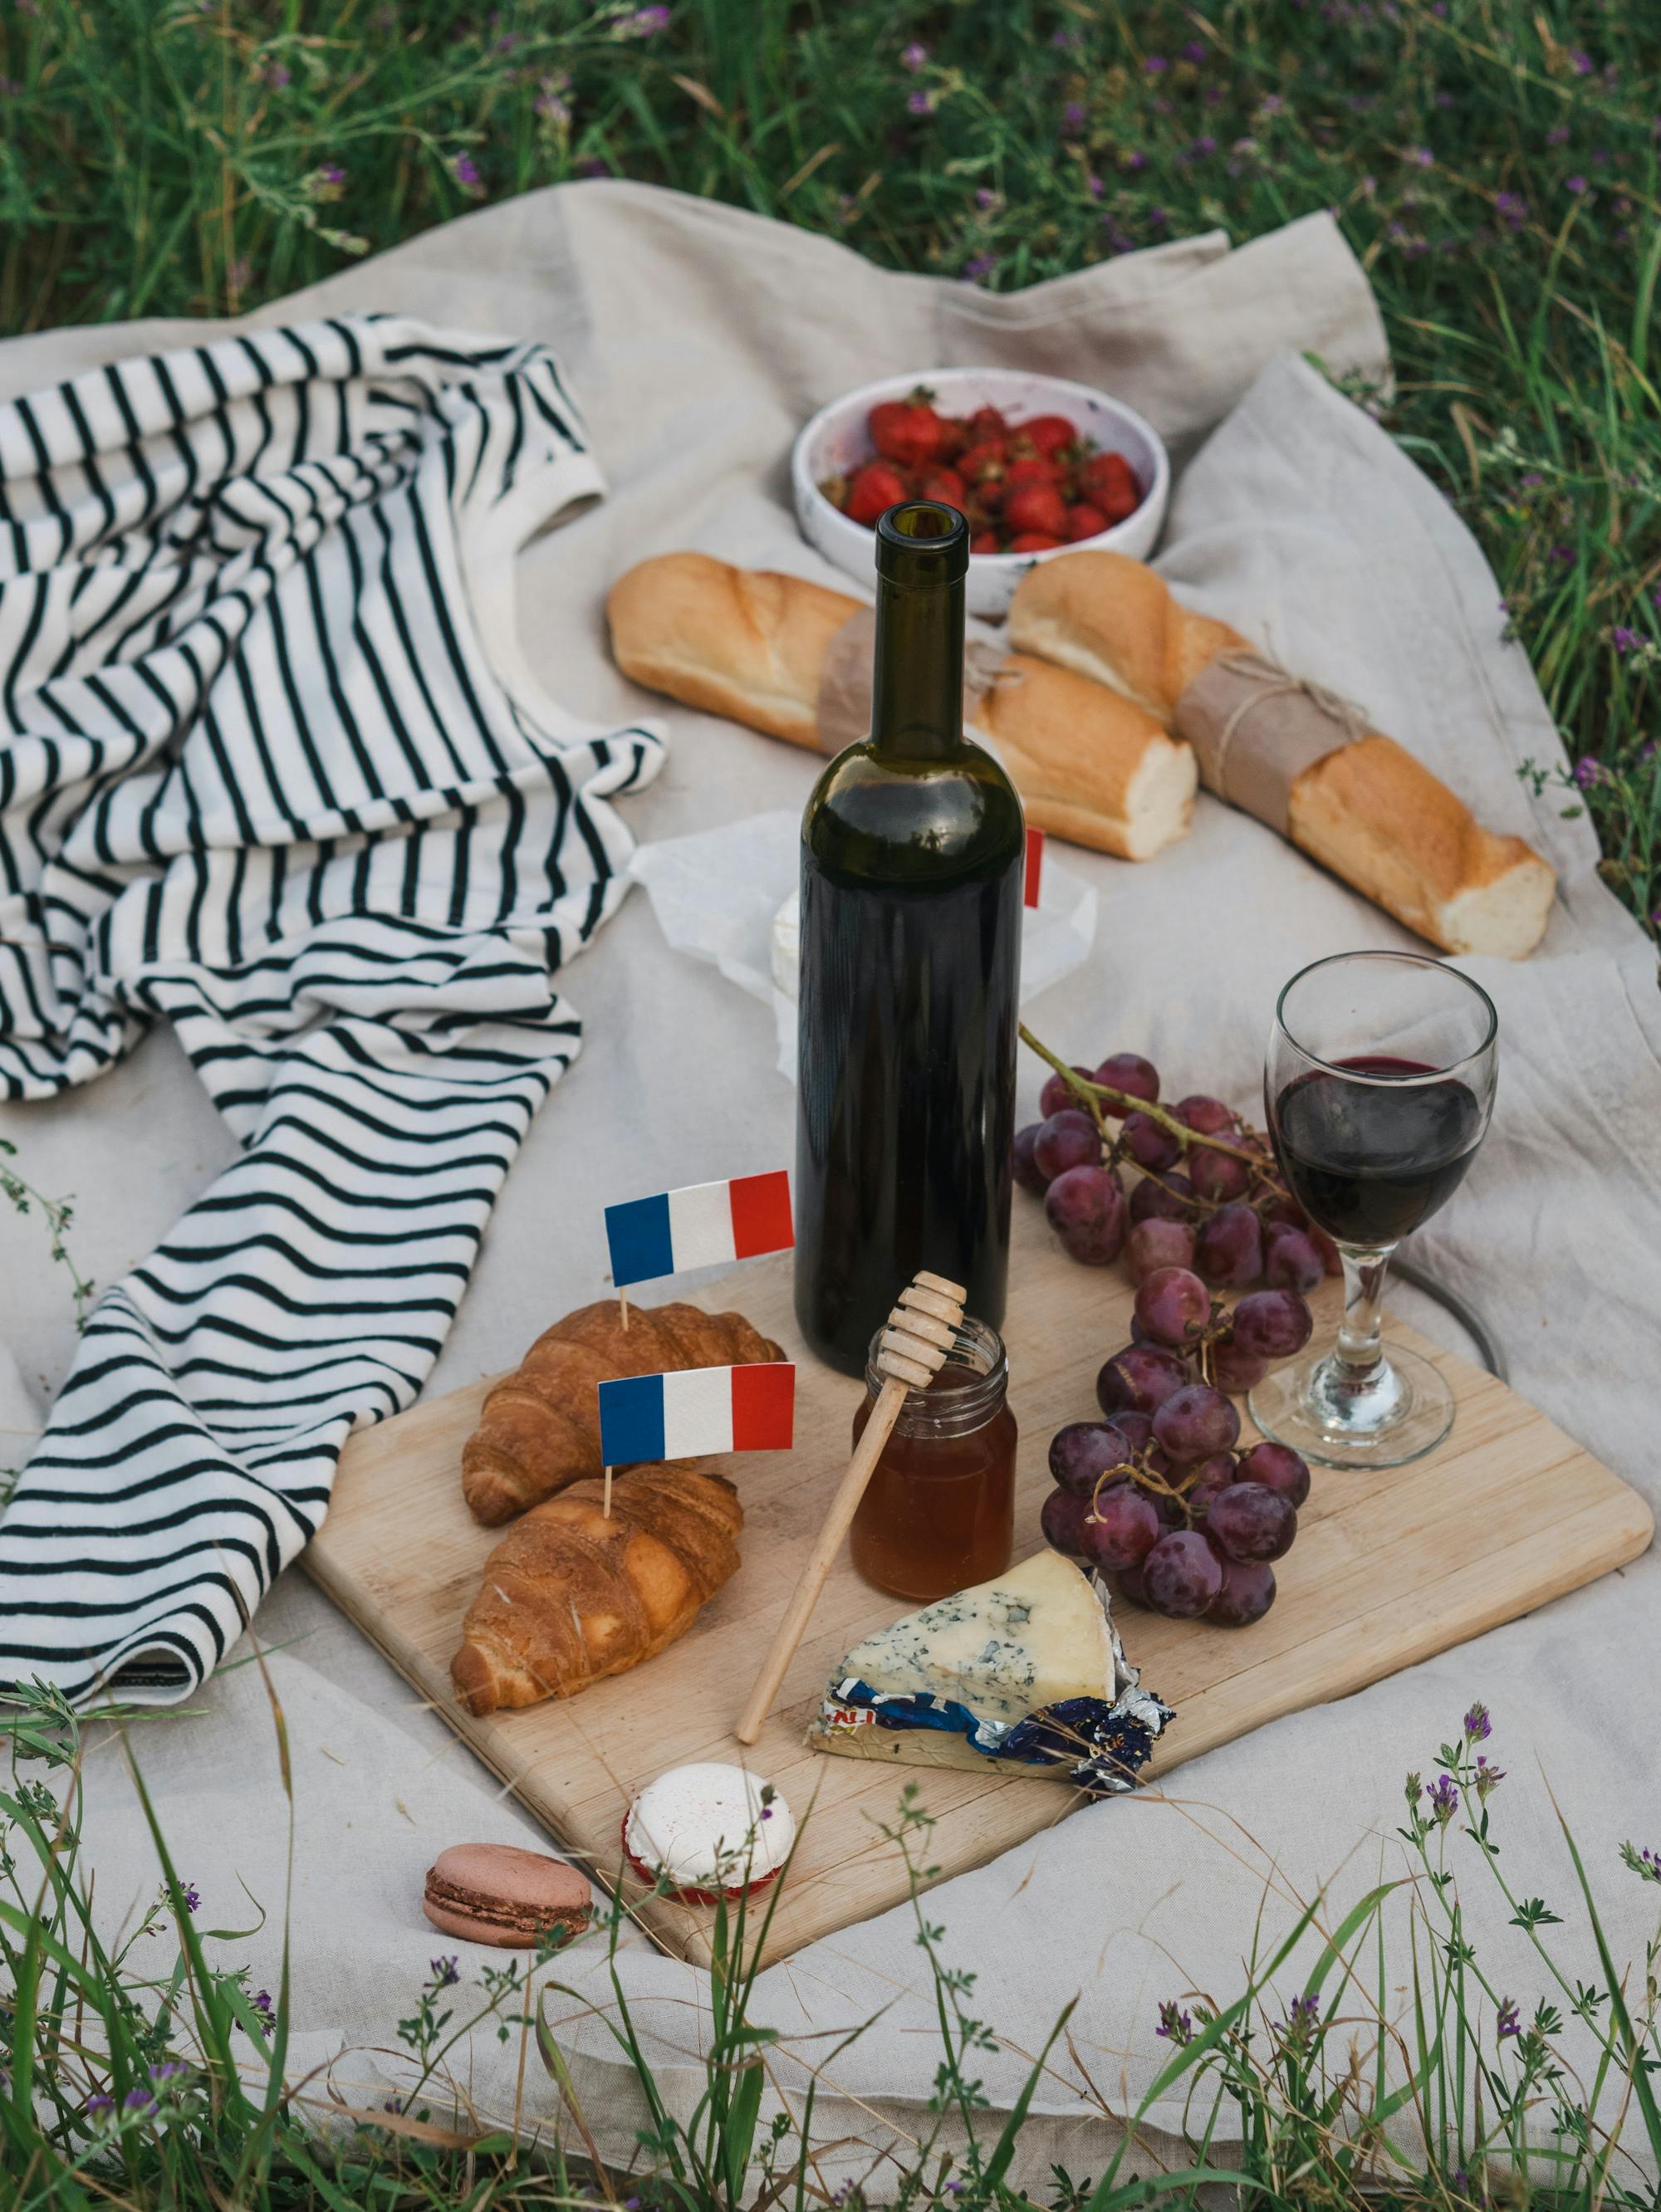 Französisches Picknick auf der Wiese: Auf der Decke liegen schön angerichtet Baguette, Croissant, Wein, Käse und Trauben.